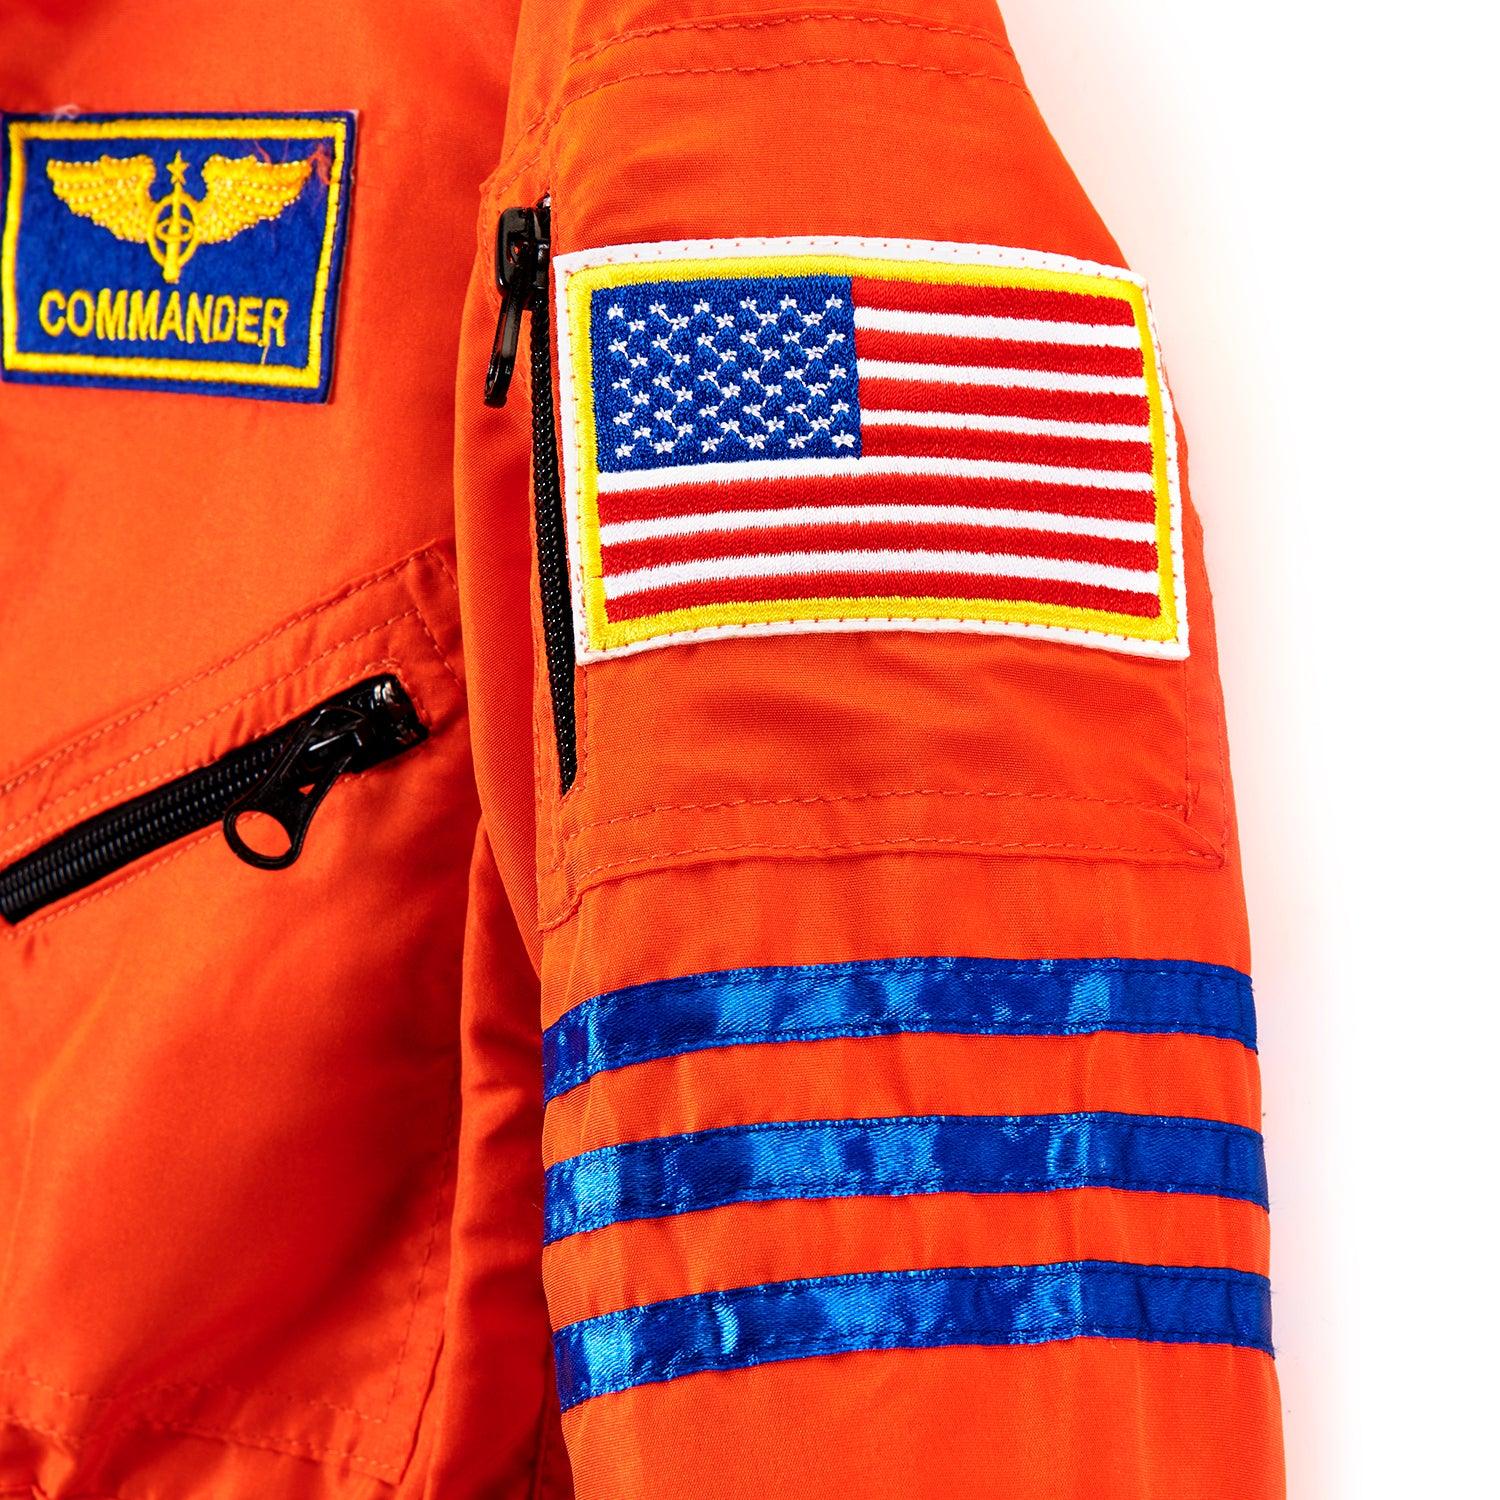 Orange Junior Astronaut Suit - Clothing - Science Museum Shop